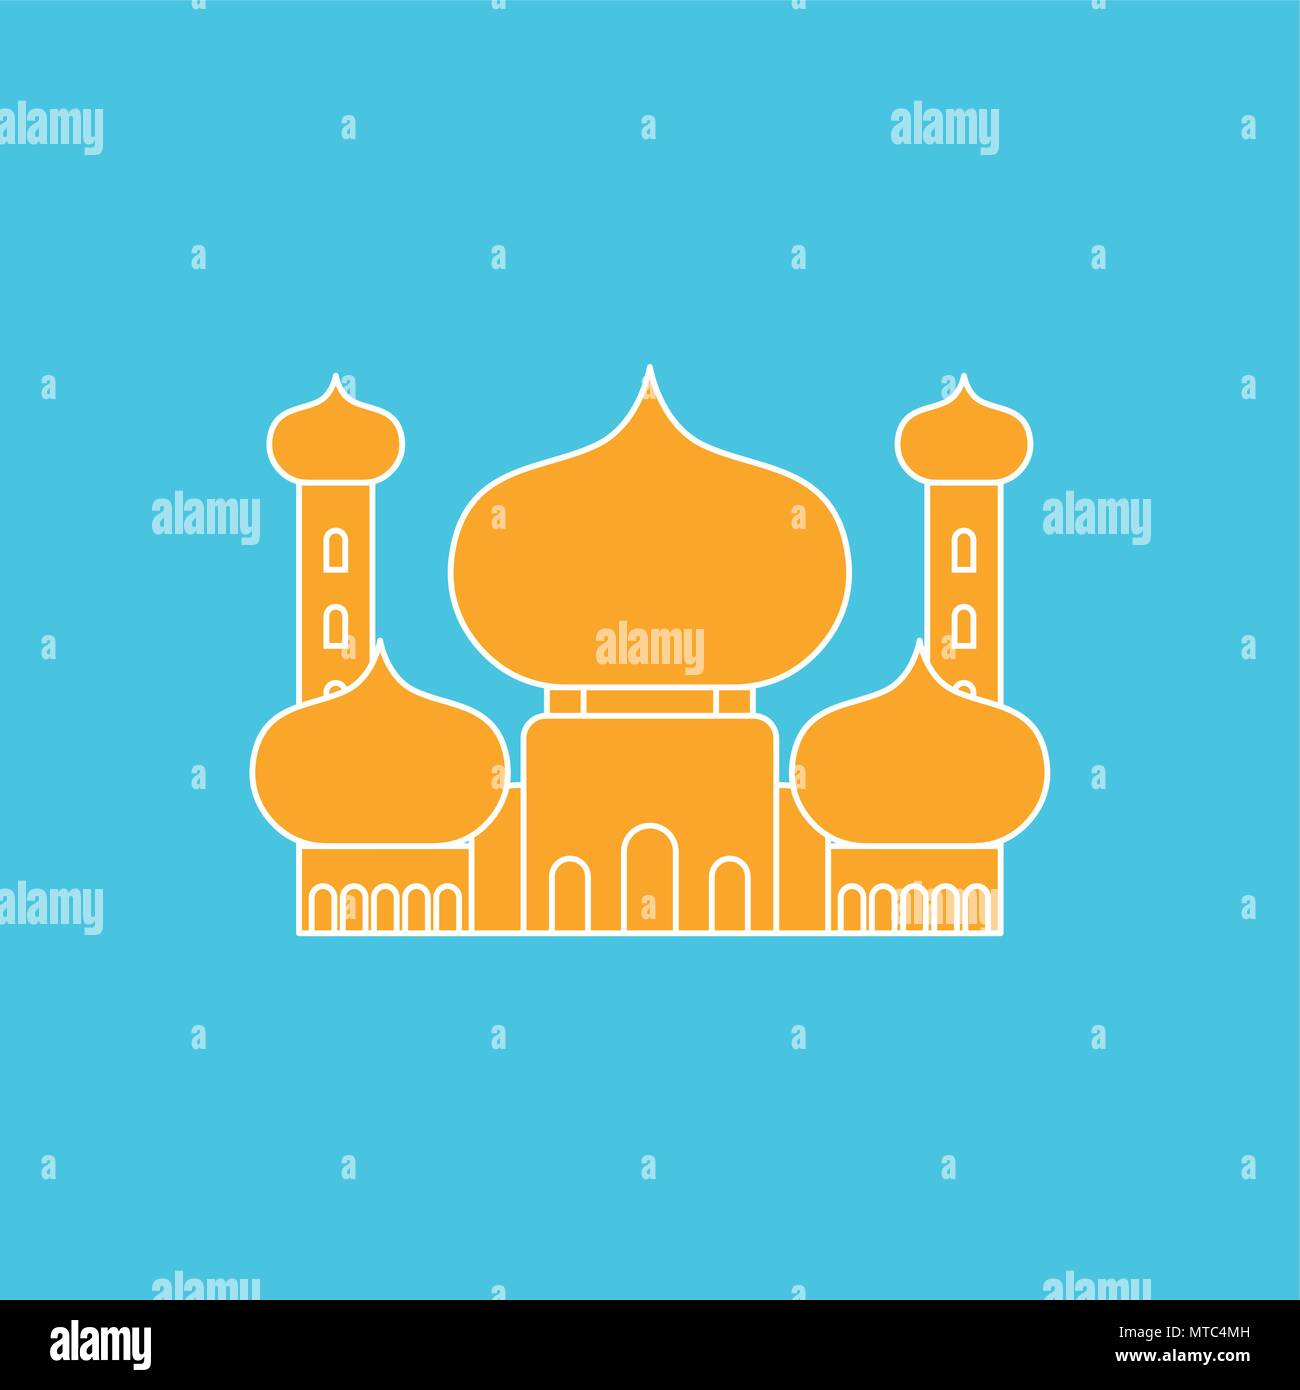 Moschee islamische religiöse Gebäude. Vector Illustration für muslimischen Feiertag Eid Mubarak. Ramadan Kareem Grußkarte Stock Vektor